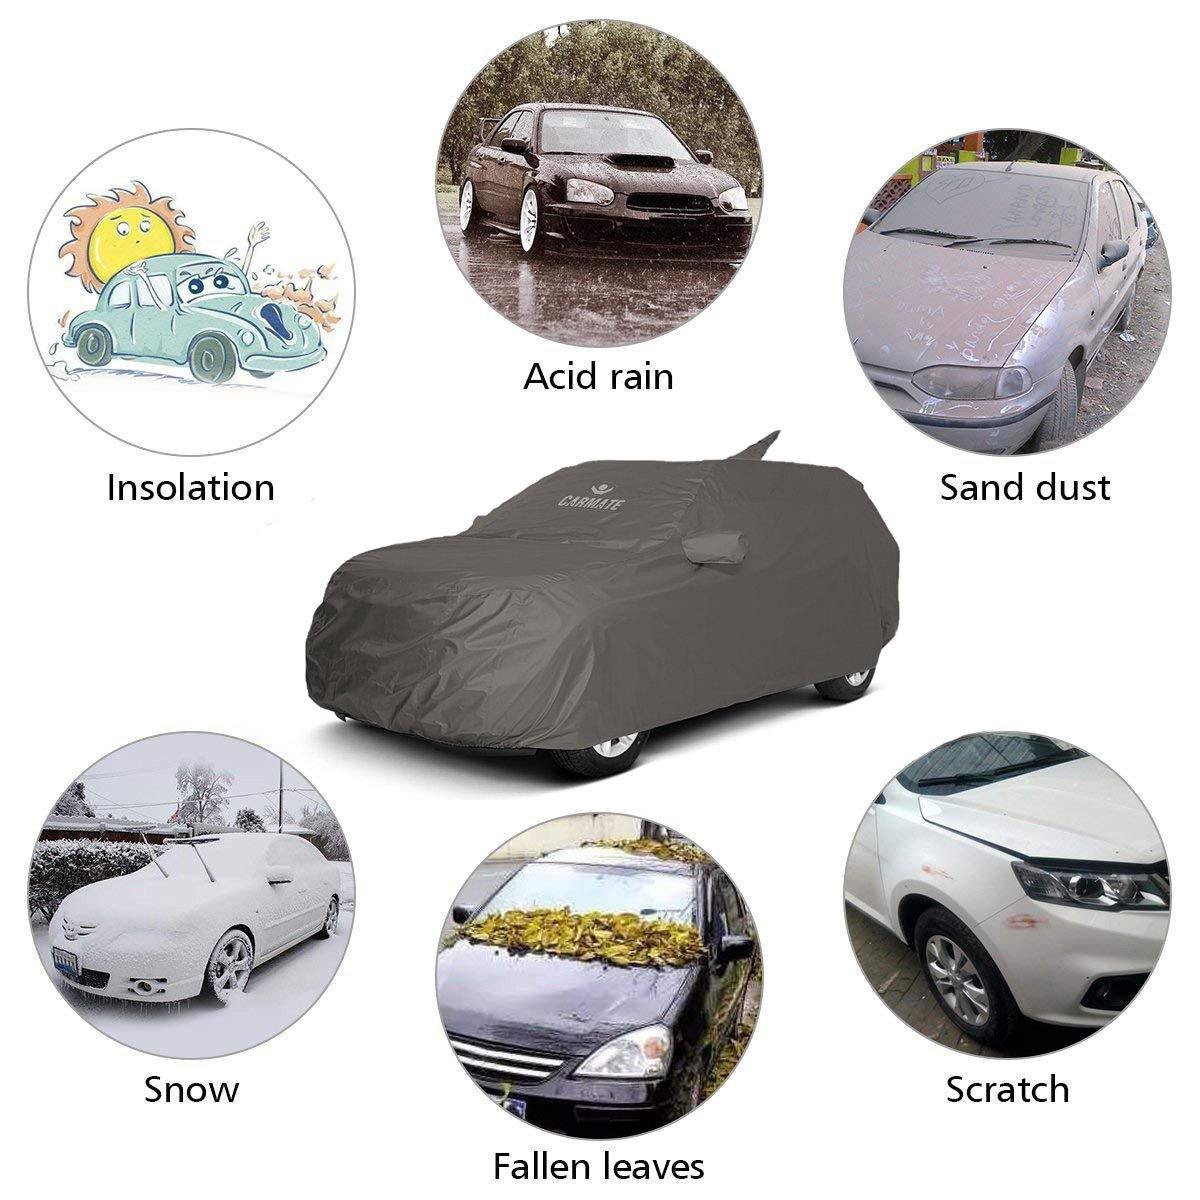 Carmate Car Body Cover 100% Waterproof Pride (Grey) for Hyundai - I20 Active - CARMATE®